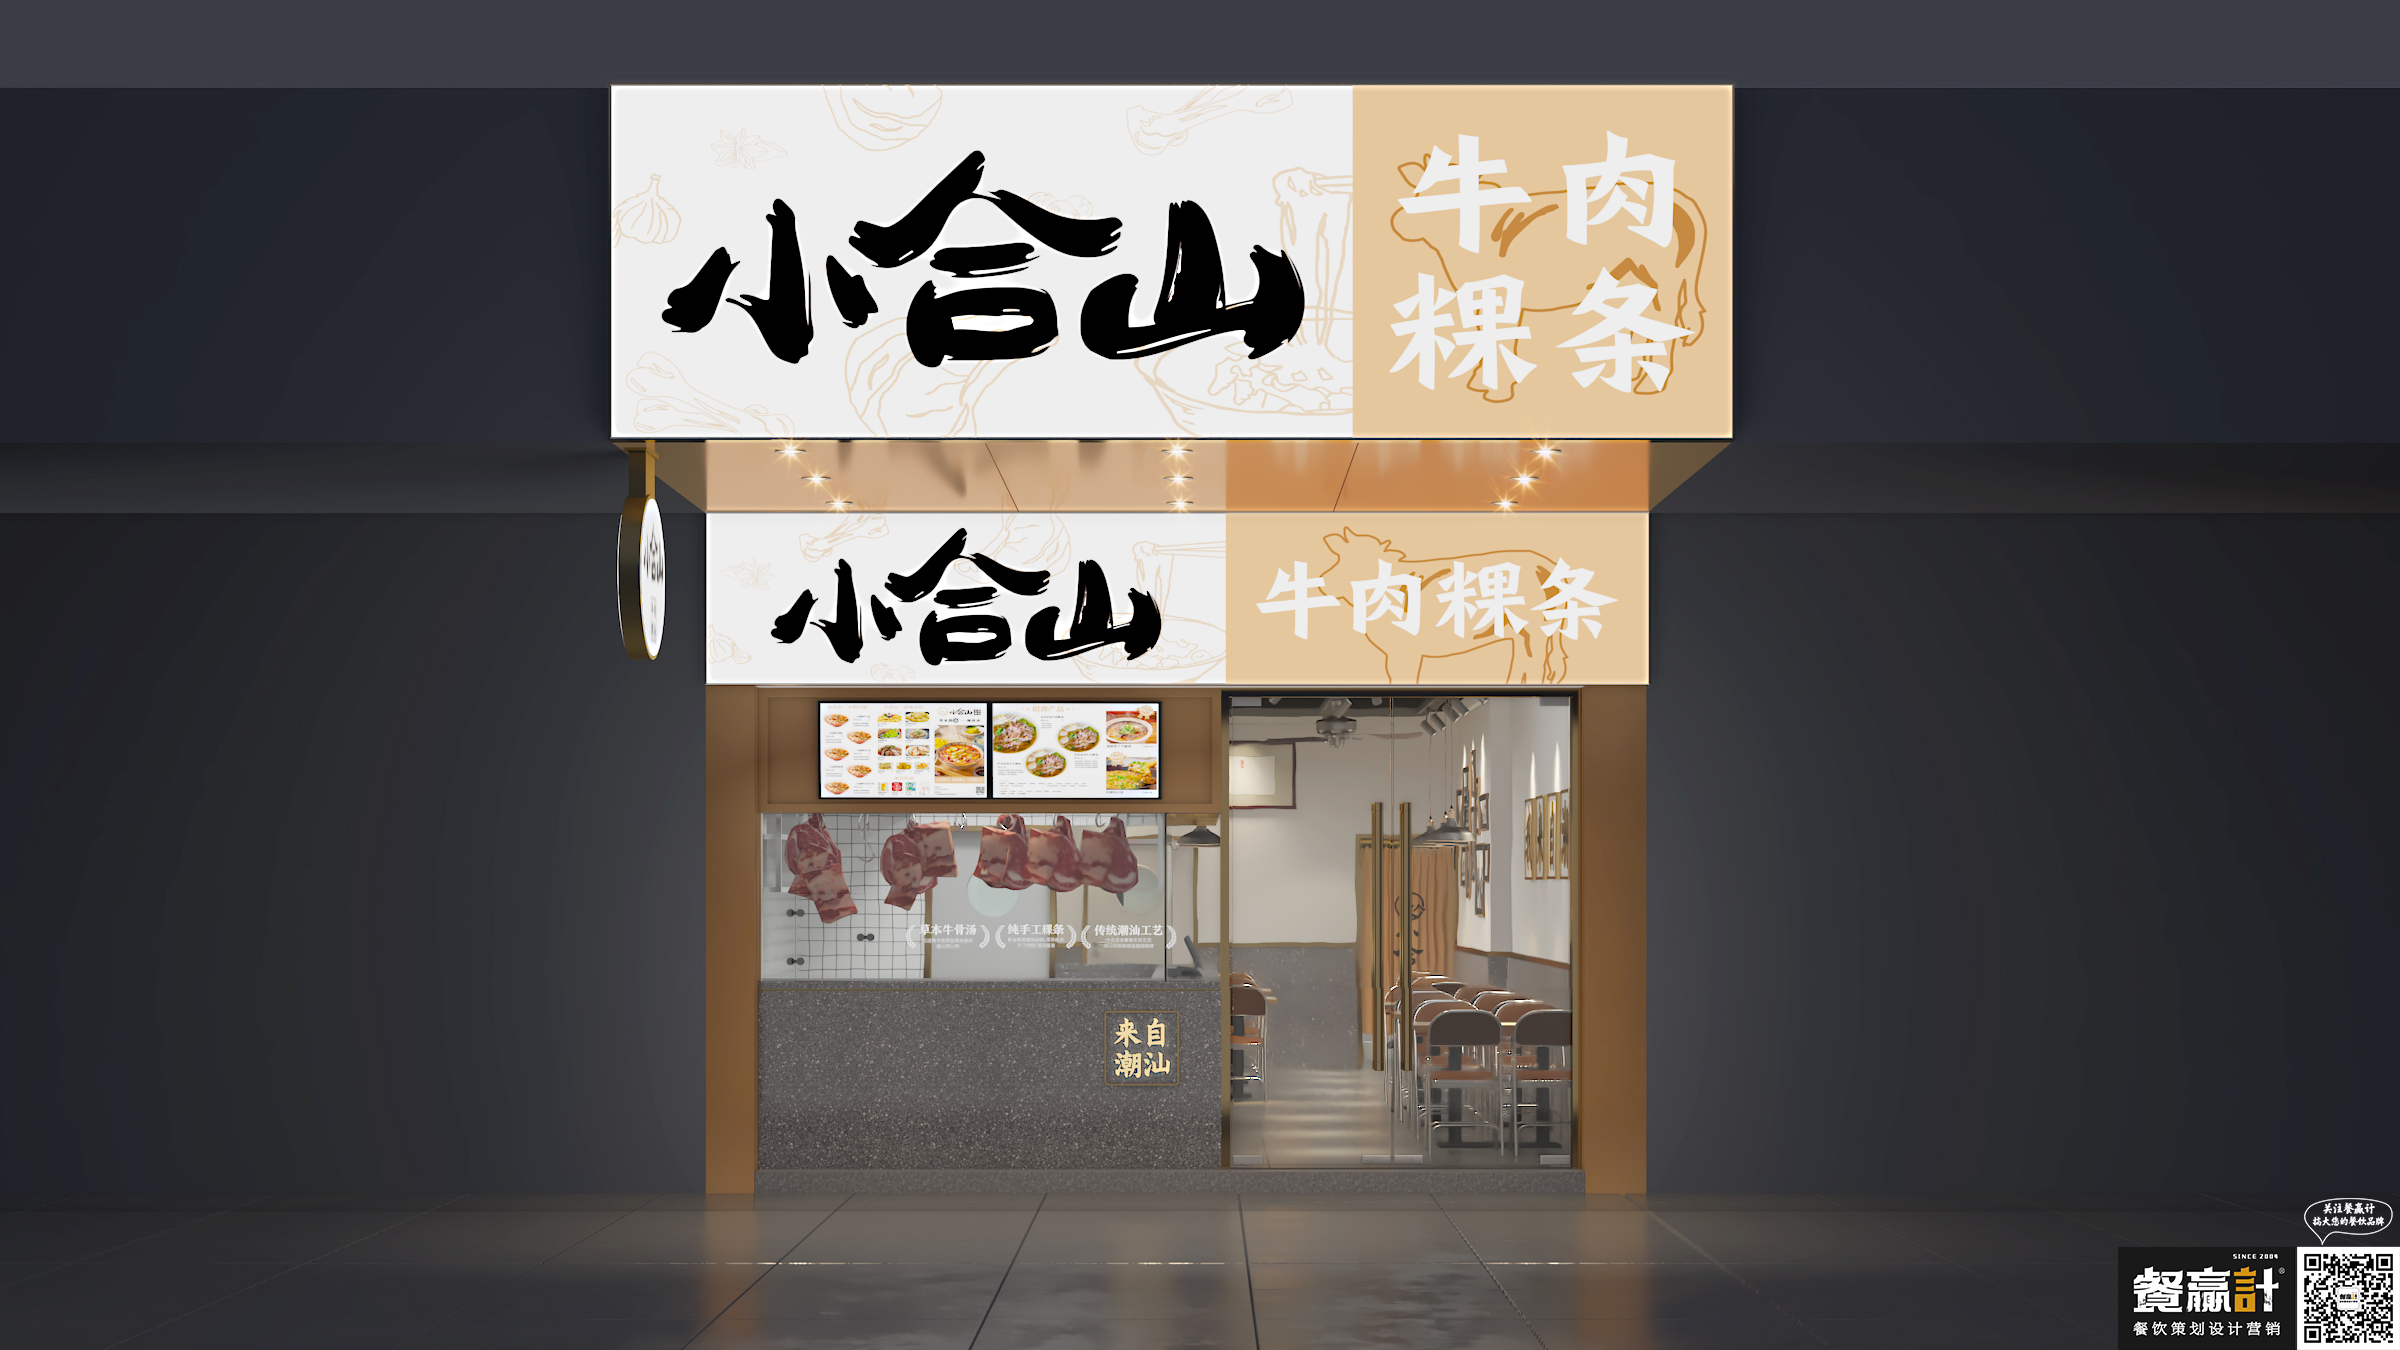 酒吧品牌小合山——牛肉粿条餐厅空间设计